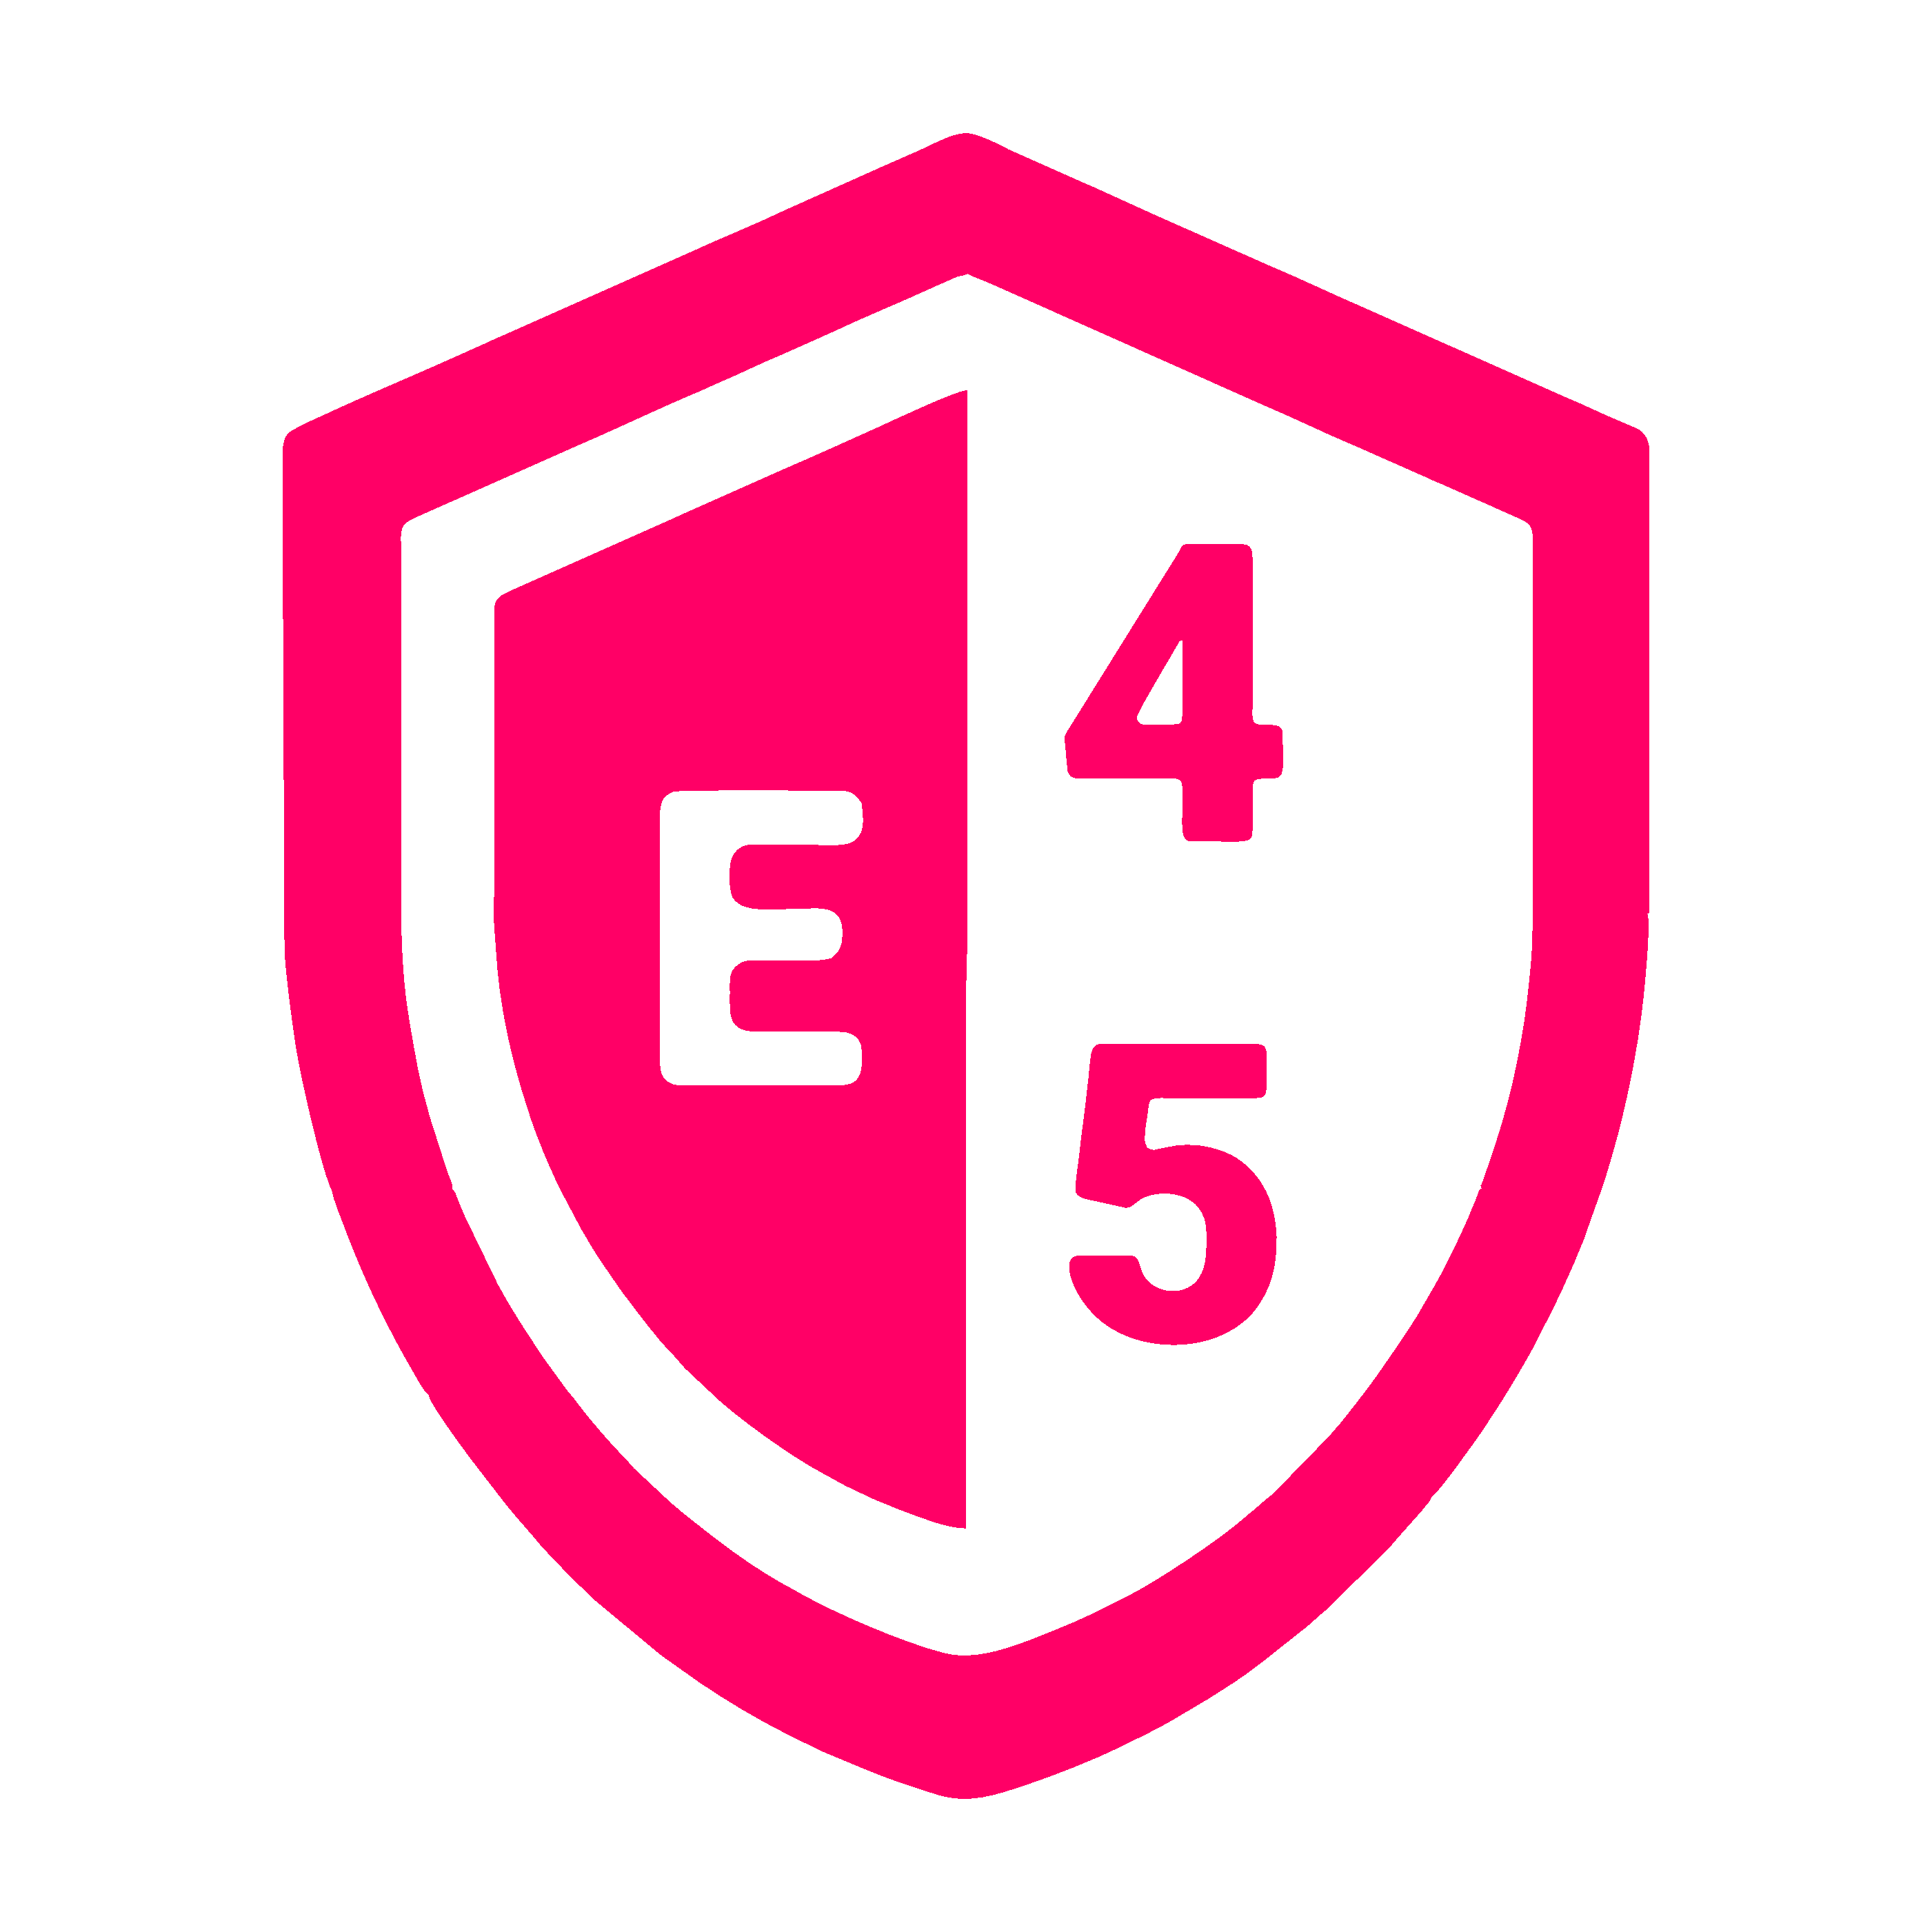 E45 game